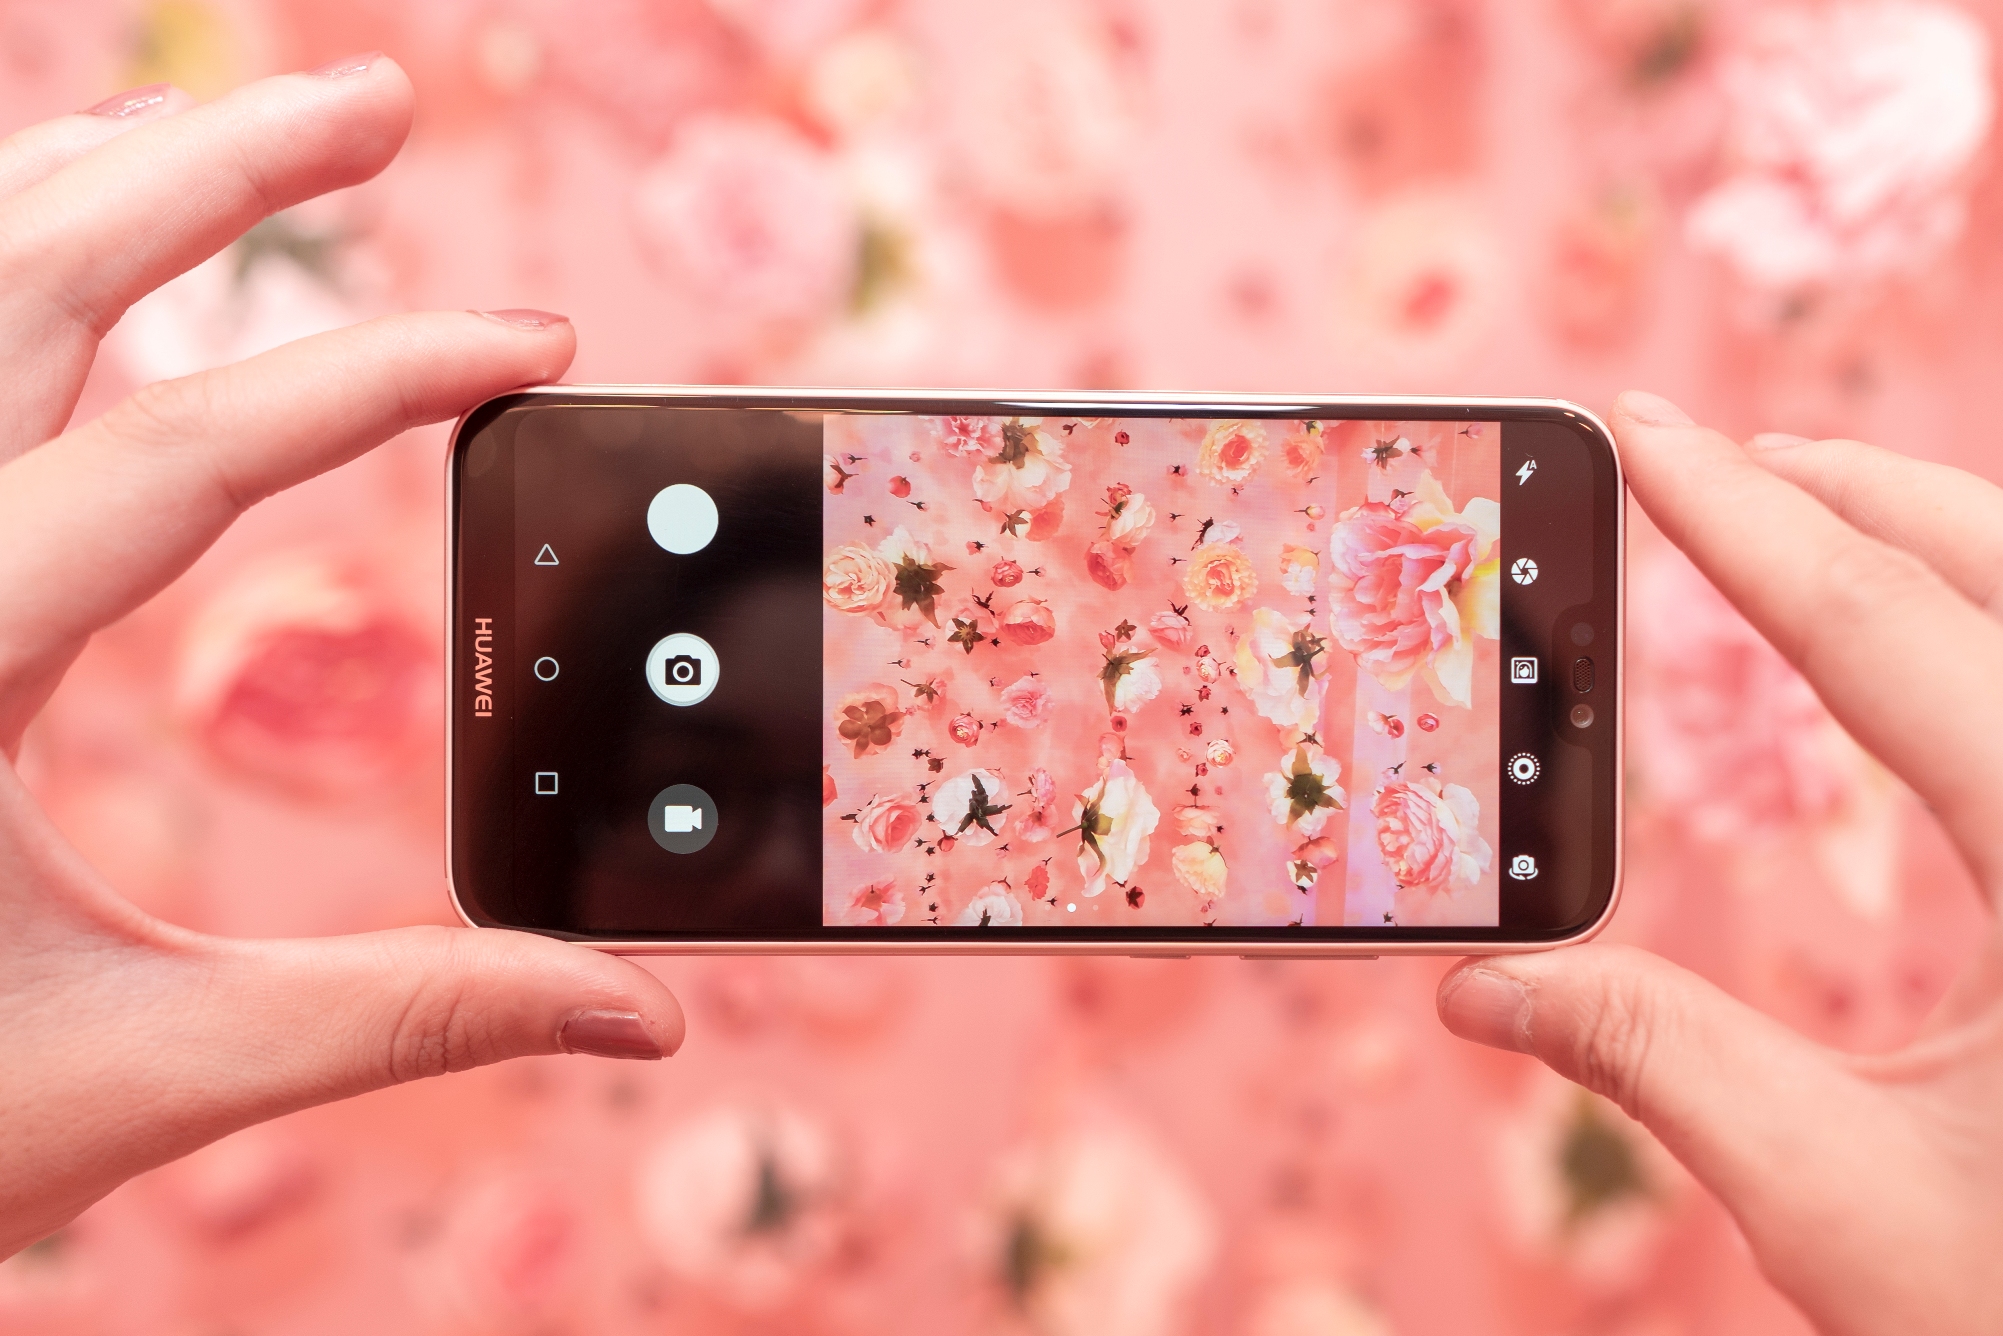 Huawei chính thức giới thiệu phiên bản Nova 3e màu hồng Sakura